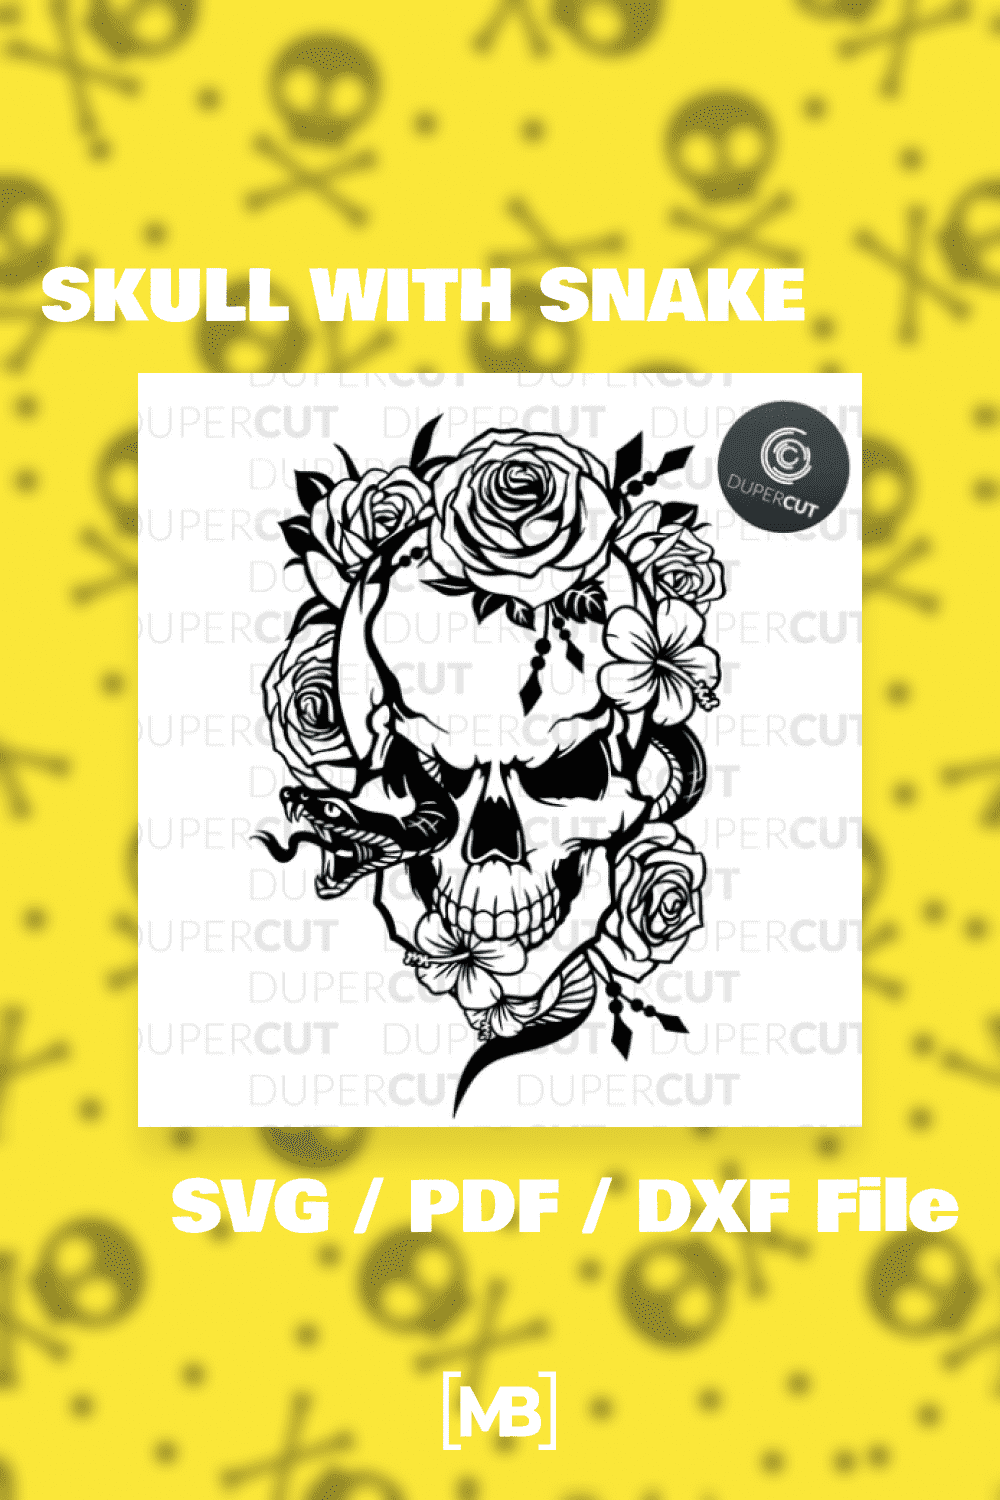 SKULL WITH SNAKE - SVG / PDF / DXF File.